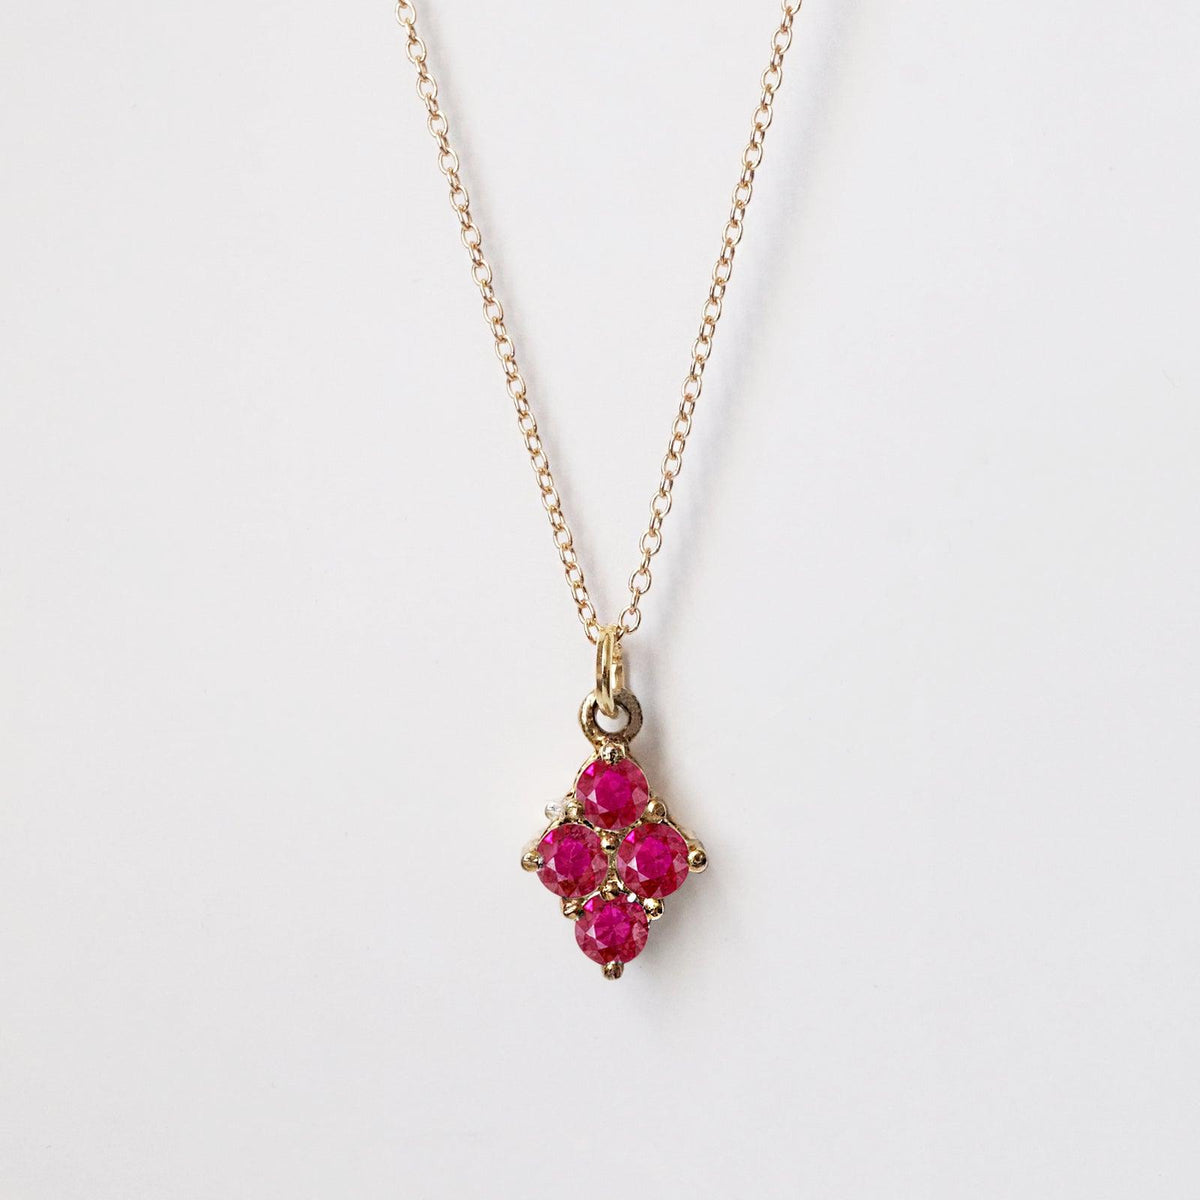 Cherry Pie Ruby Necklace - Tippy Taste Jewelry